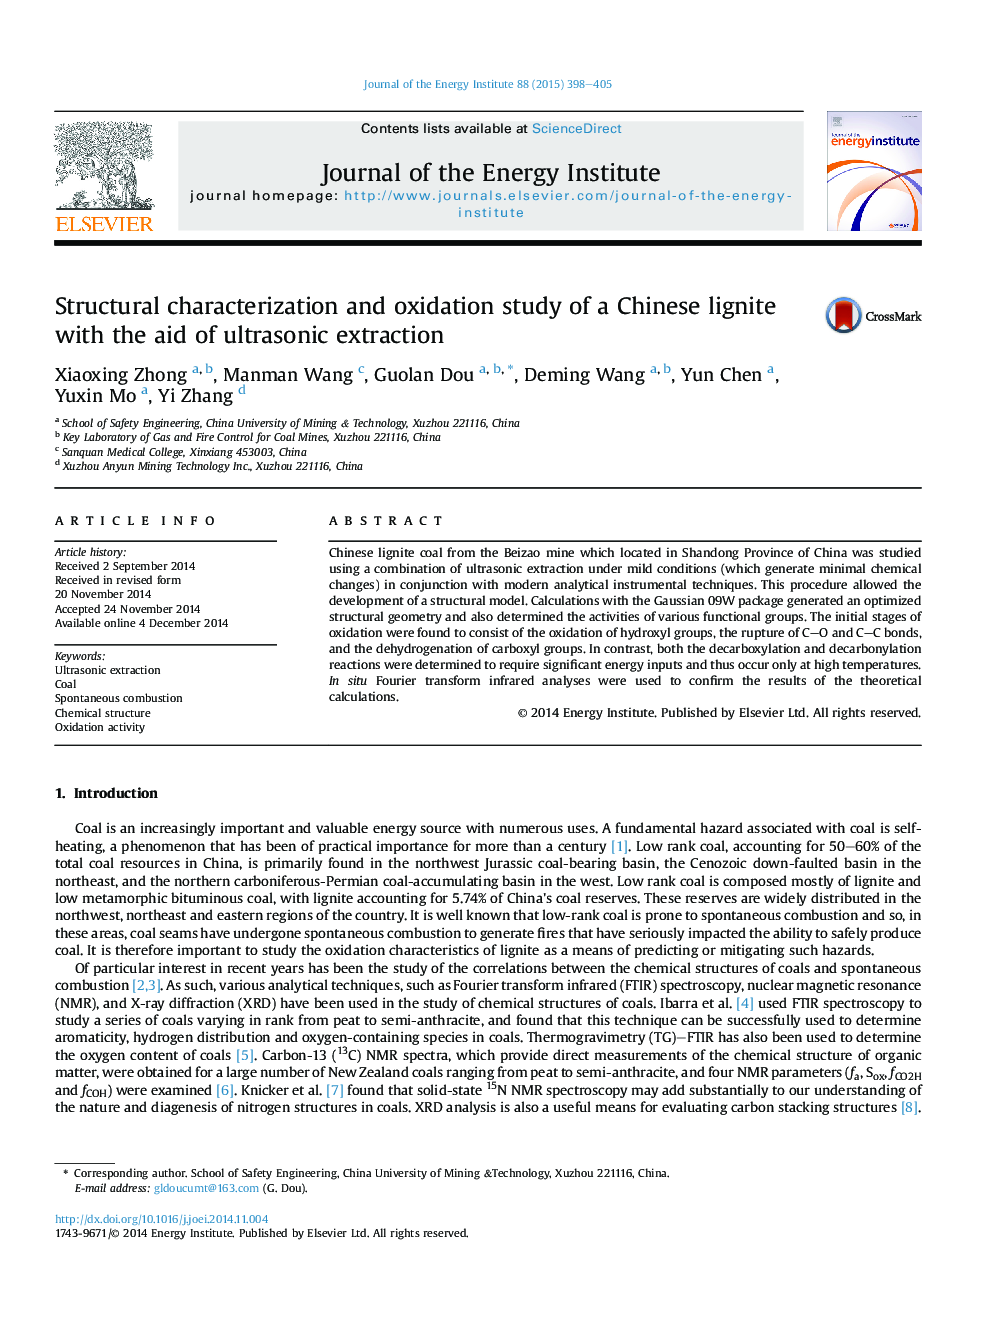 بررسی خصوصیات ساختاری و بررسی اکسیداسیون سنگ قیمتی چینی با استفاده از استخراج اولتراسونیک 